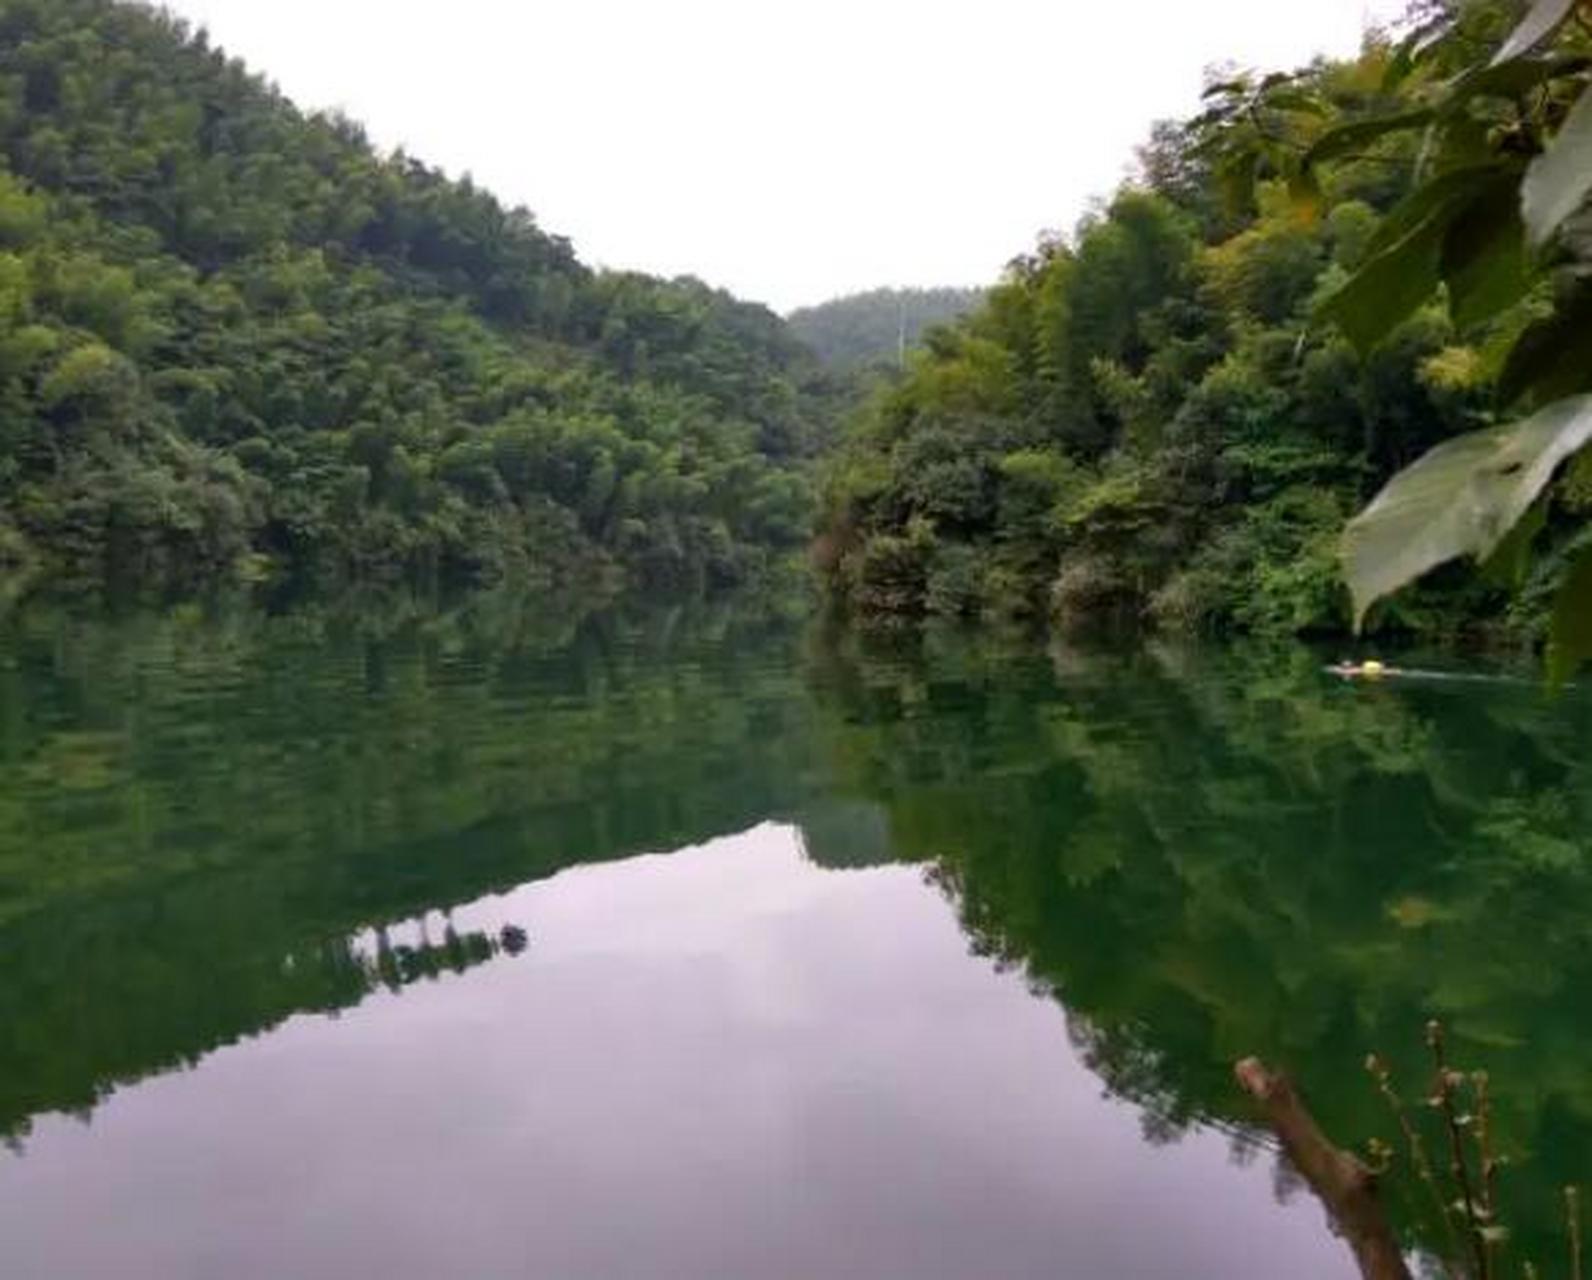 碧湖潭国家森林公园位于江西省萍乡市湘东区,经营面积6838